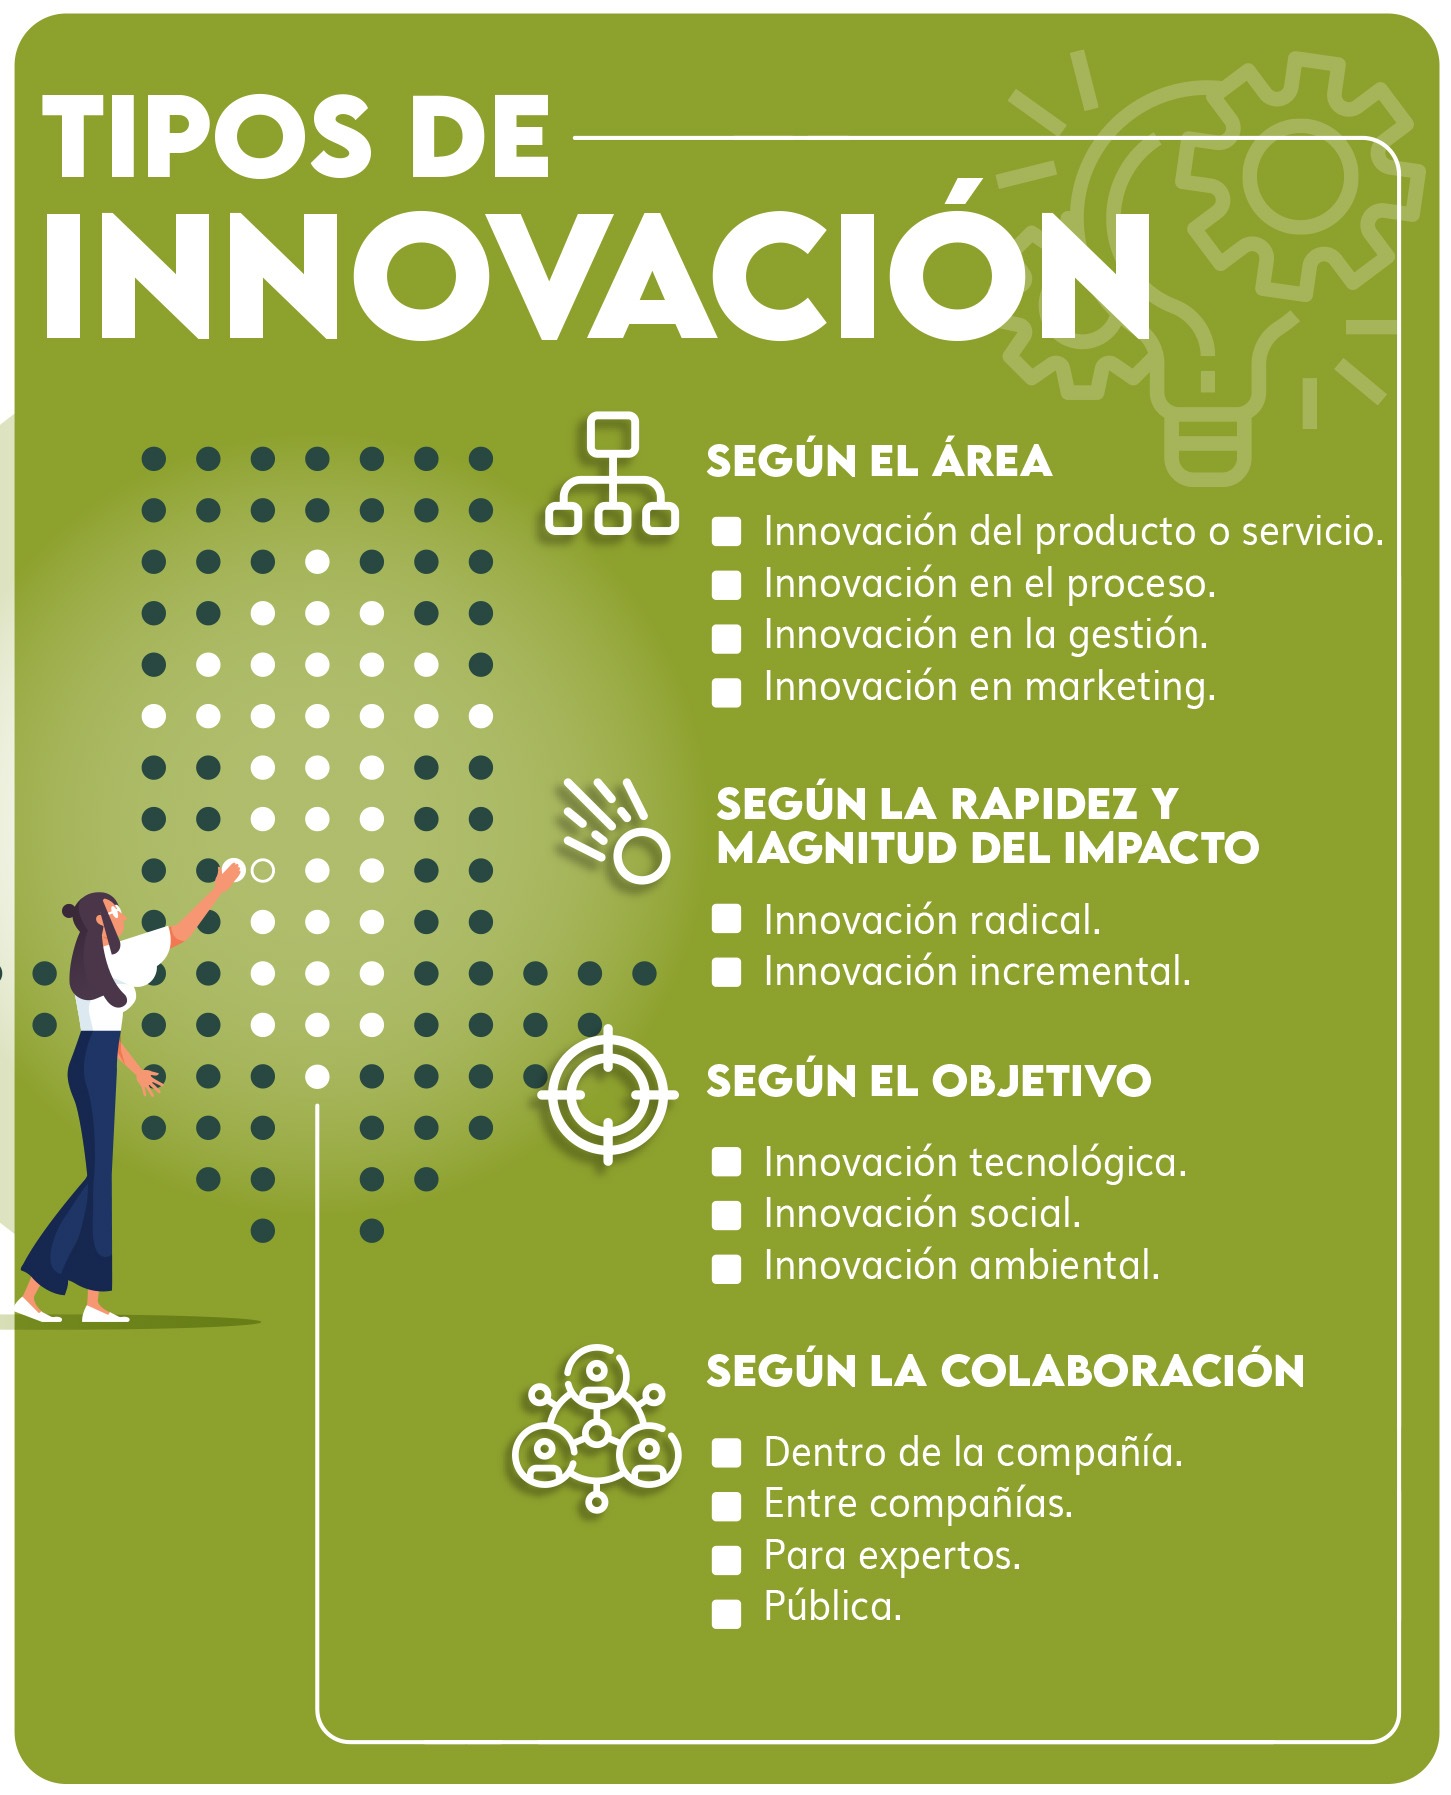 Tipos de innovación